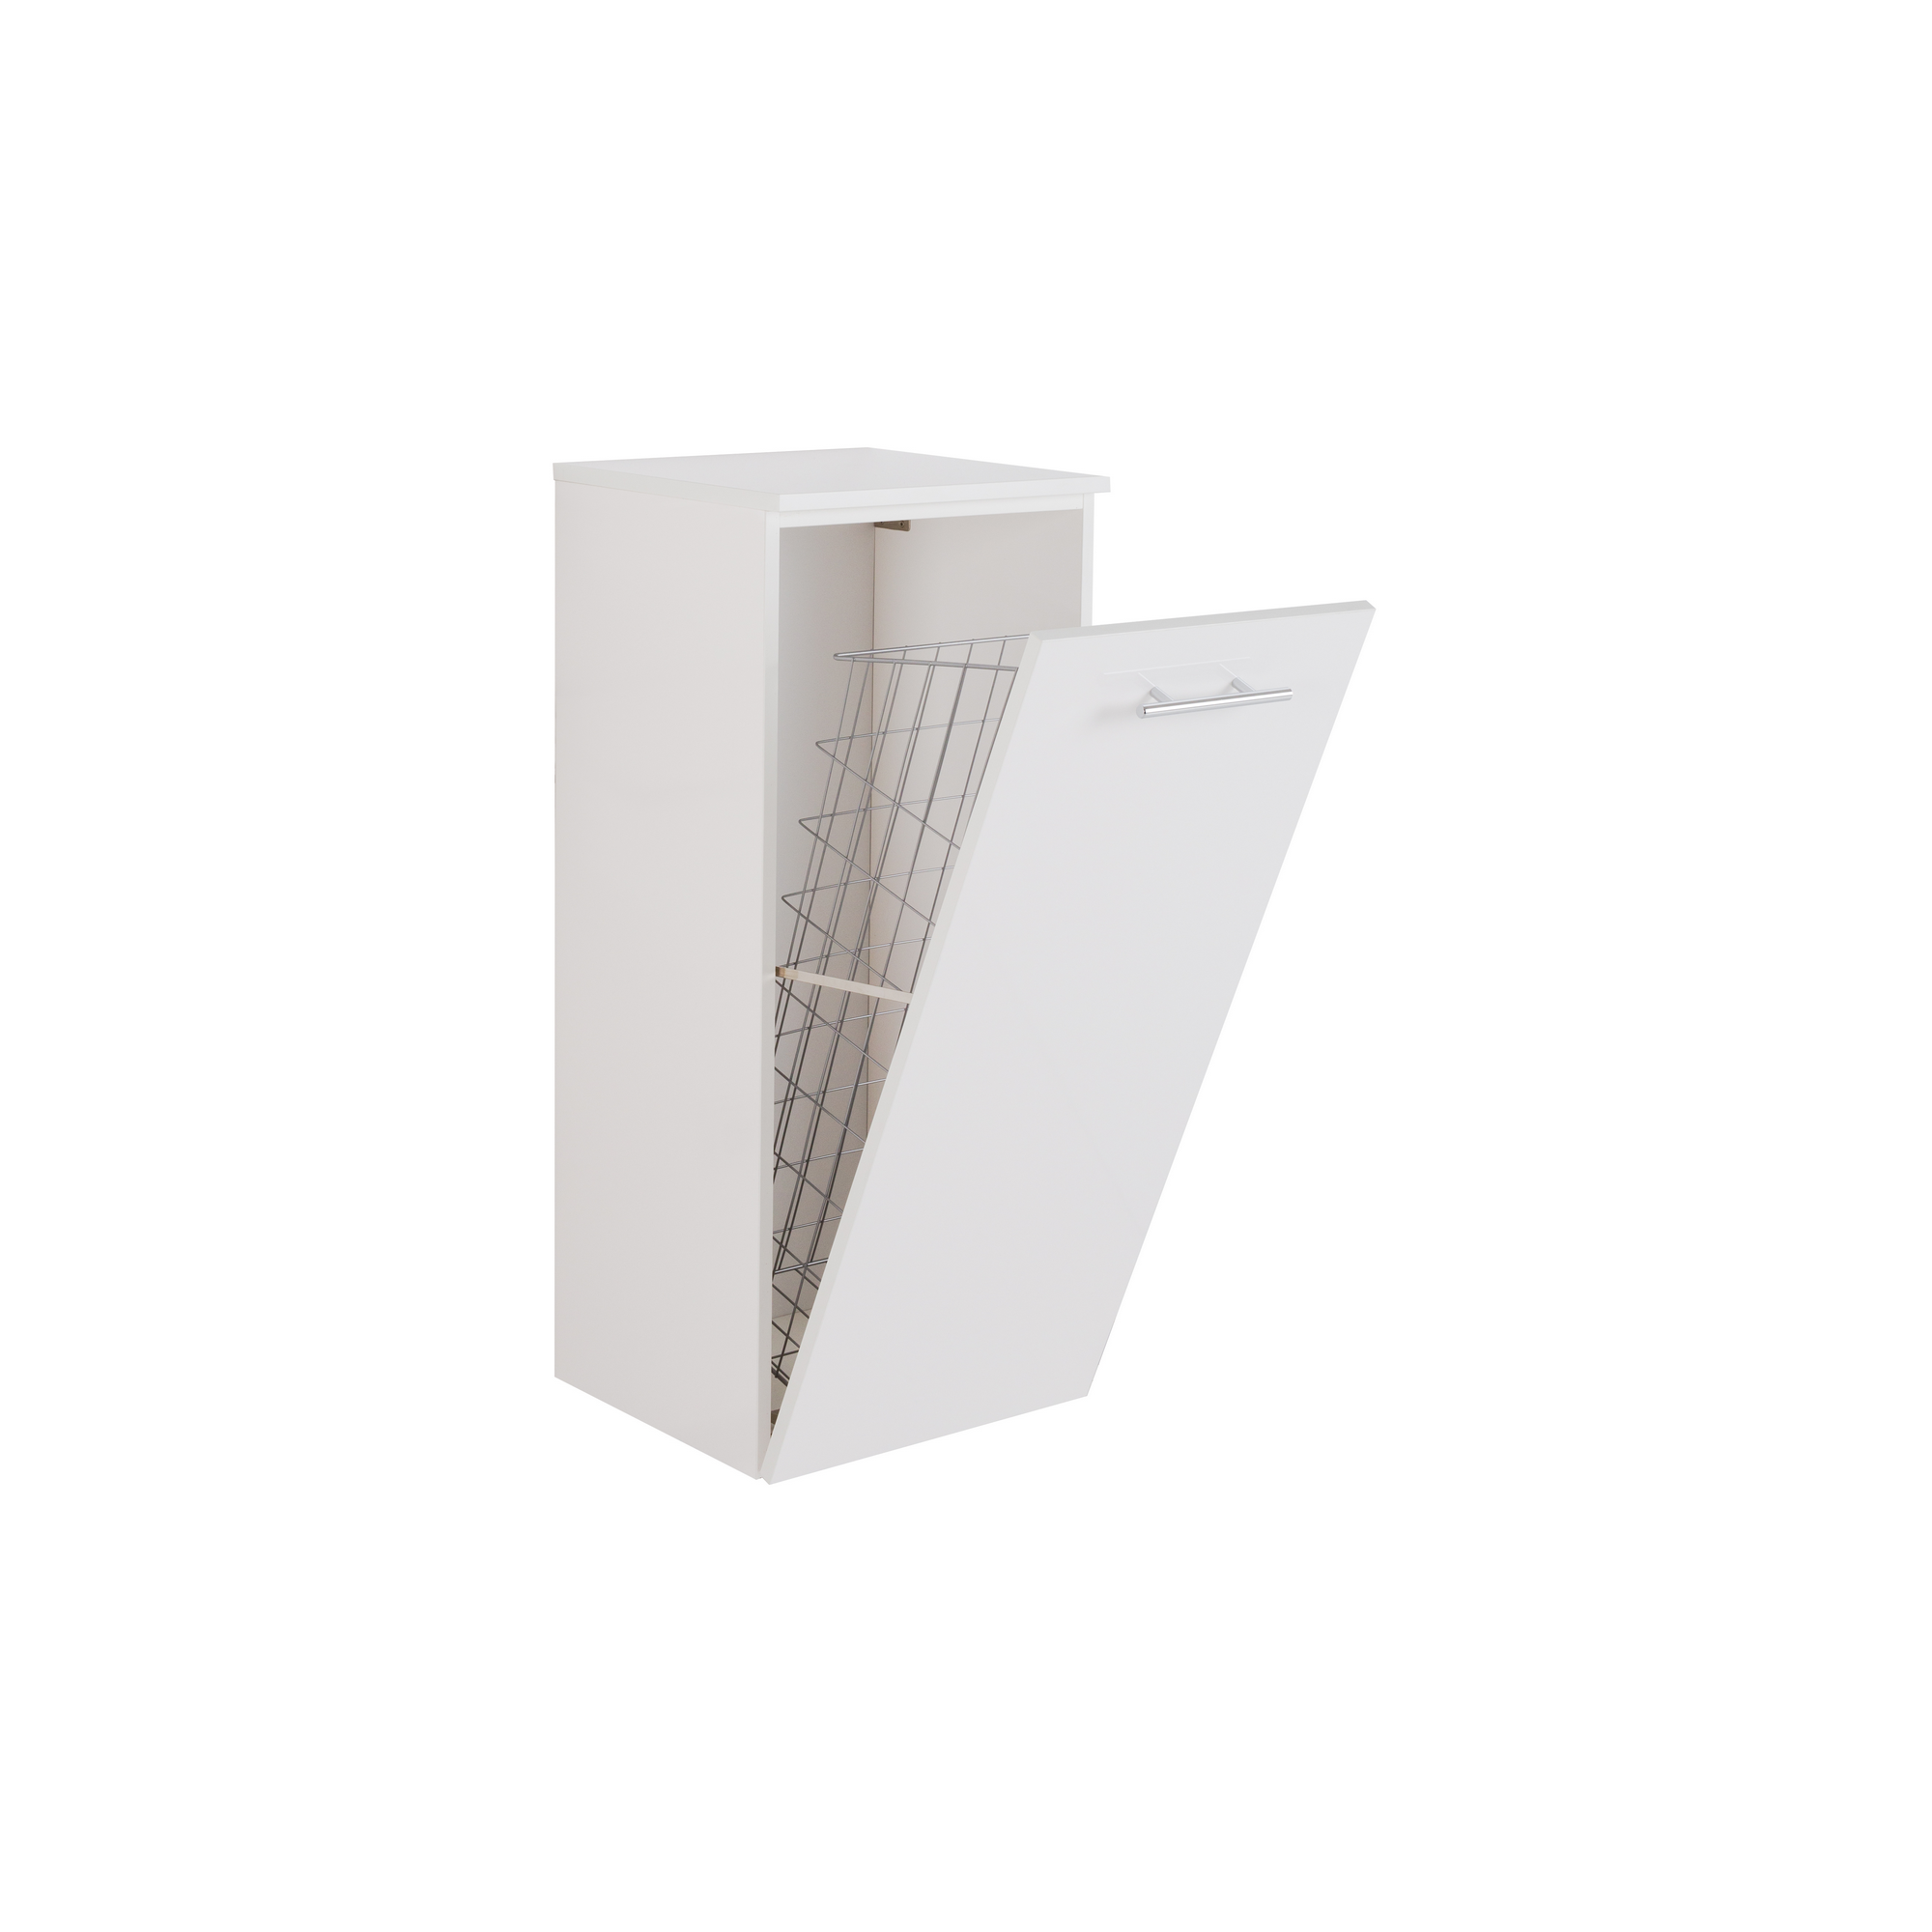 Beistellschrank 'OPTIpremio 2990' weiß 40 x 91,2 x 35 cm + product picture